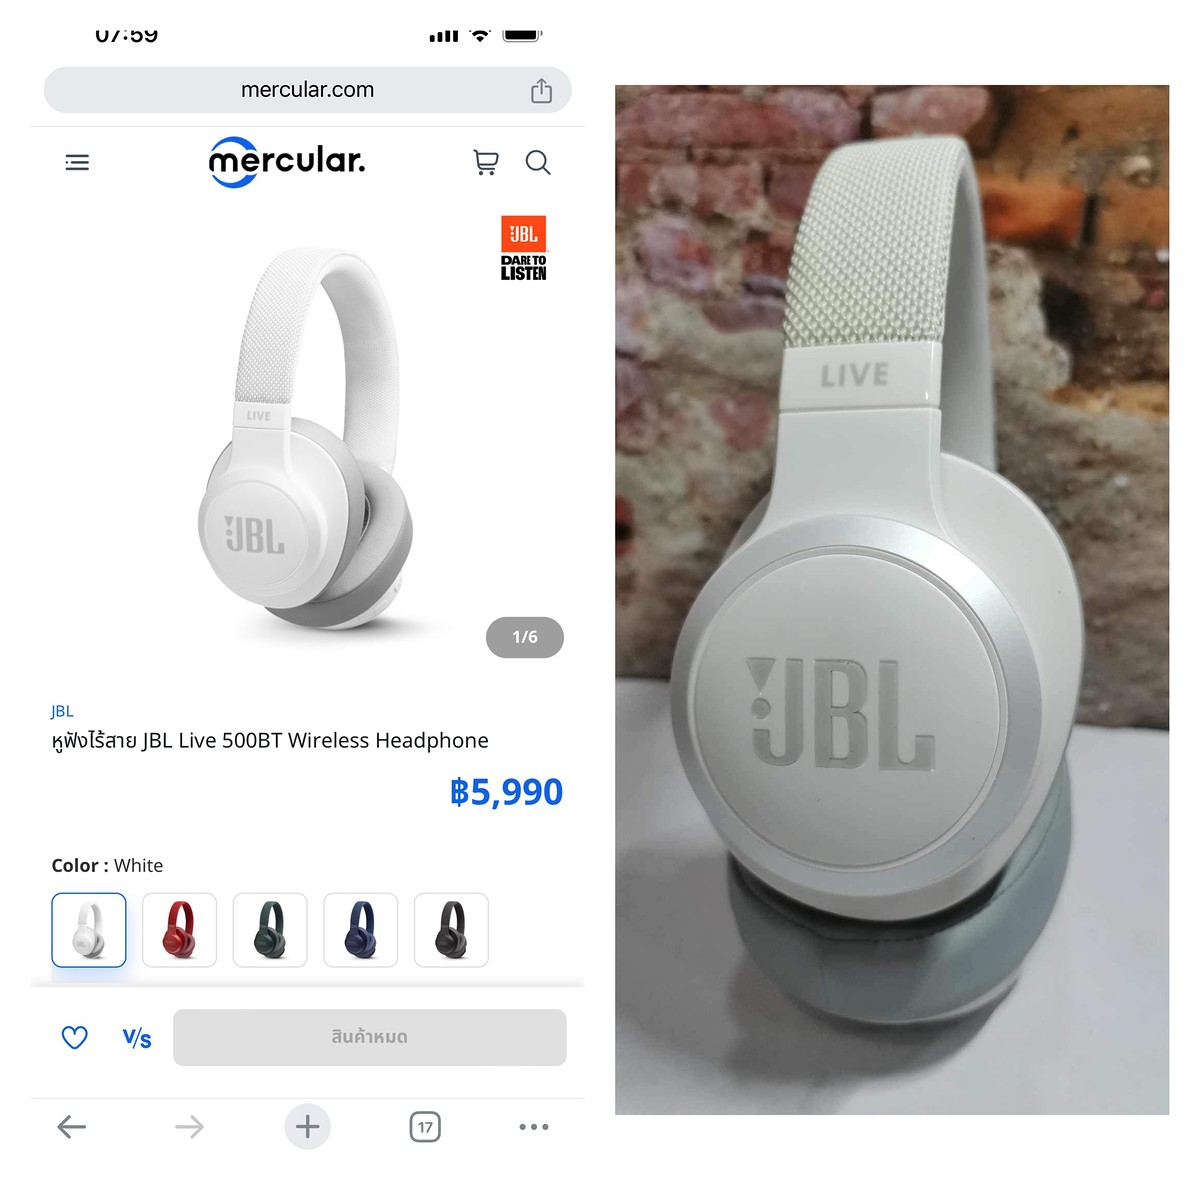 หูฟังไร้สายมือหนึ่ง JBL Live 500 Wireless Headphone สีดำ ของแท้100%

JBL LIVE 500BT หูฟังไร้สายแบบ